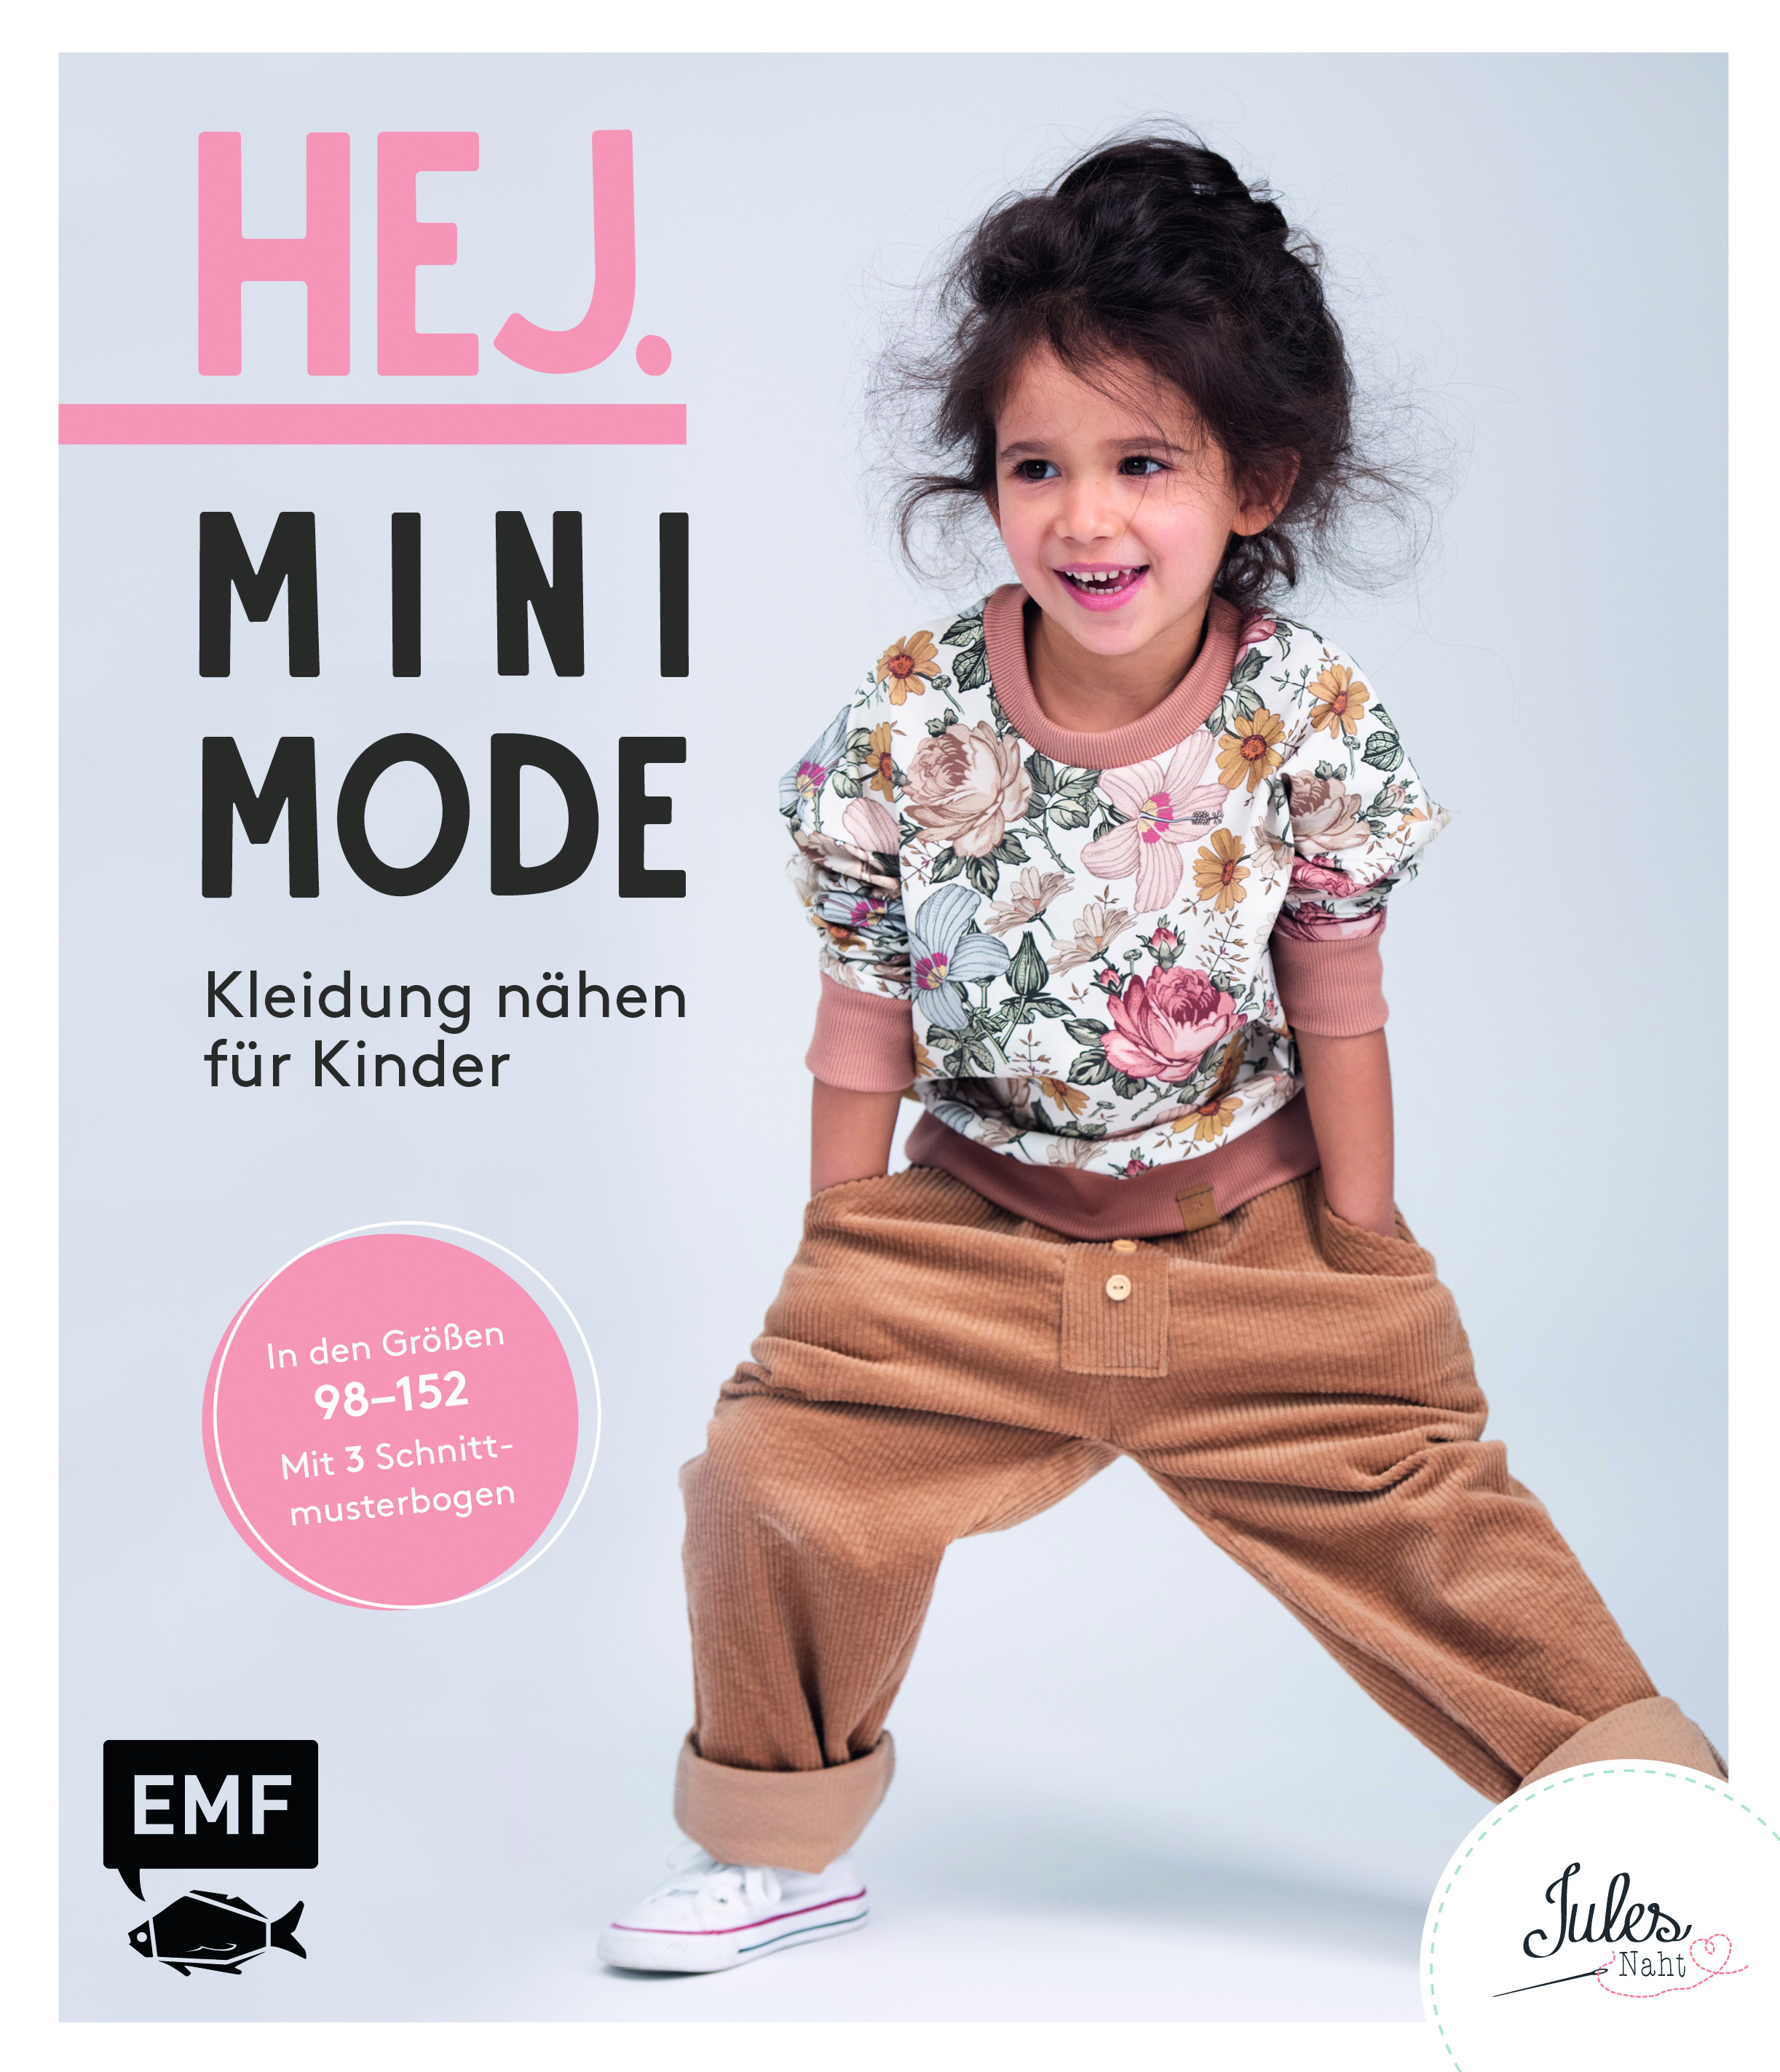 Schnittmuster Buch Hej. Minimode – Kleidung nähen für Kinder Gr. 98-152